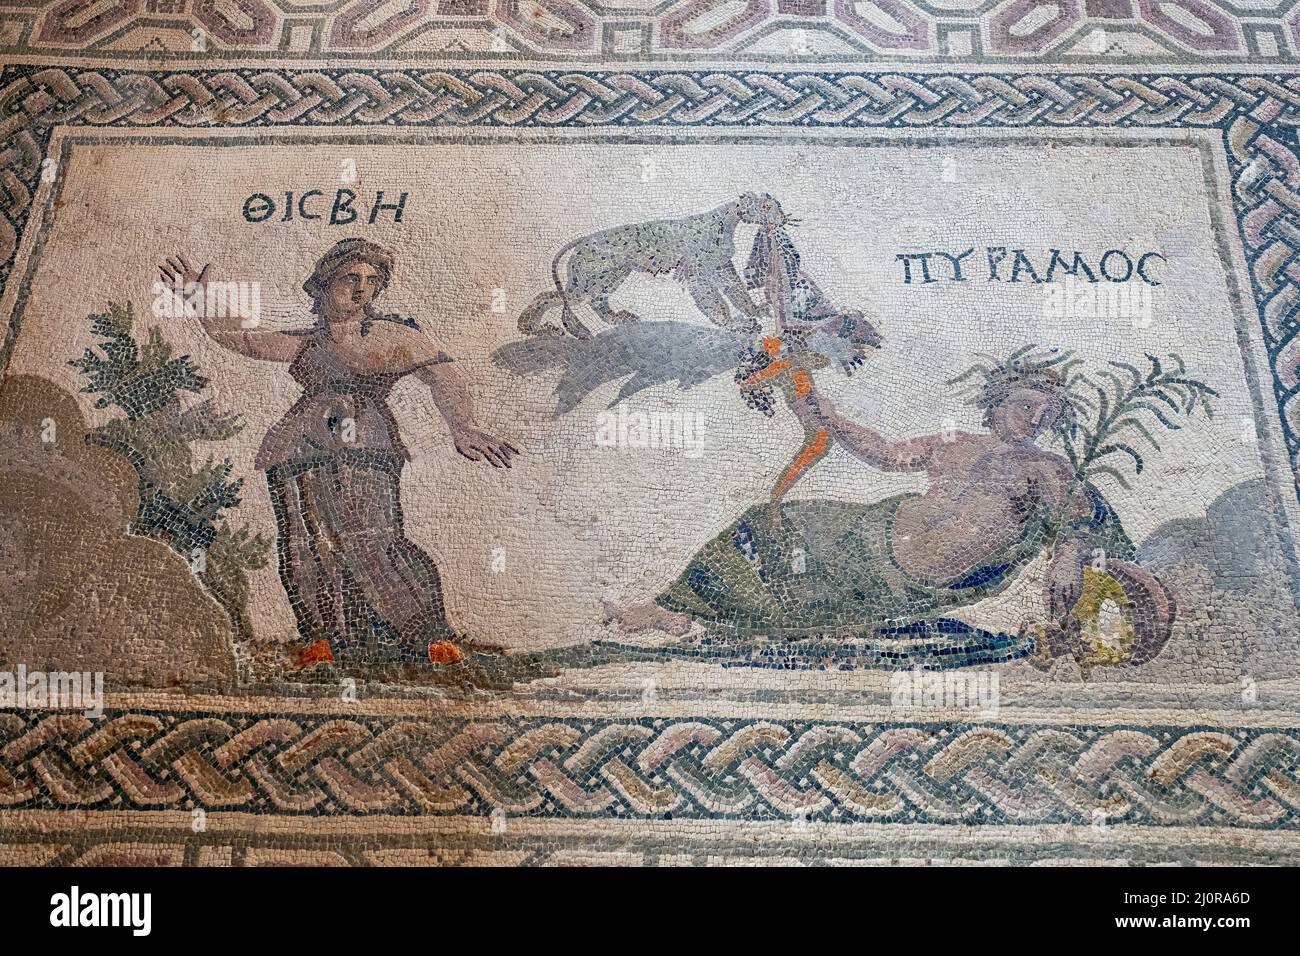 Mosaïque romaine représentant l'histoire d'amour entre Pyramide et Thisbe. Maison de Dionysos, Parc archéologique de Kato Paphos, Chypre. Banque D'Images